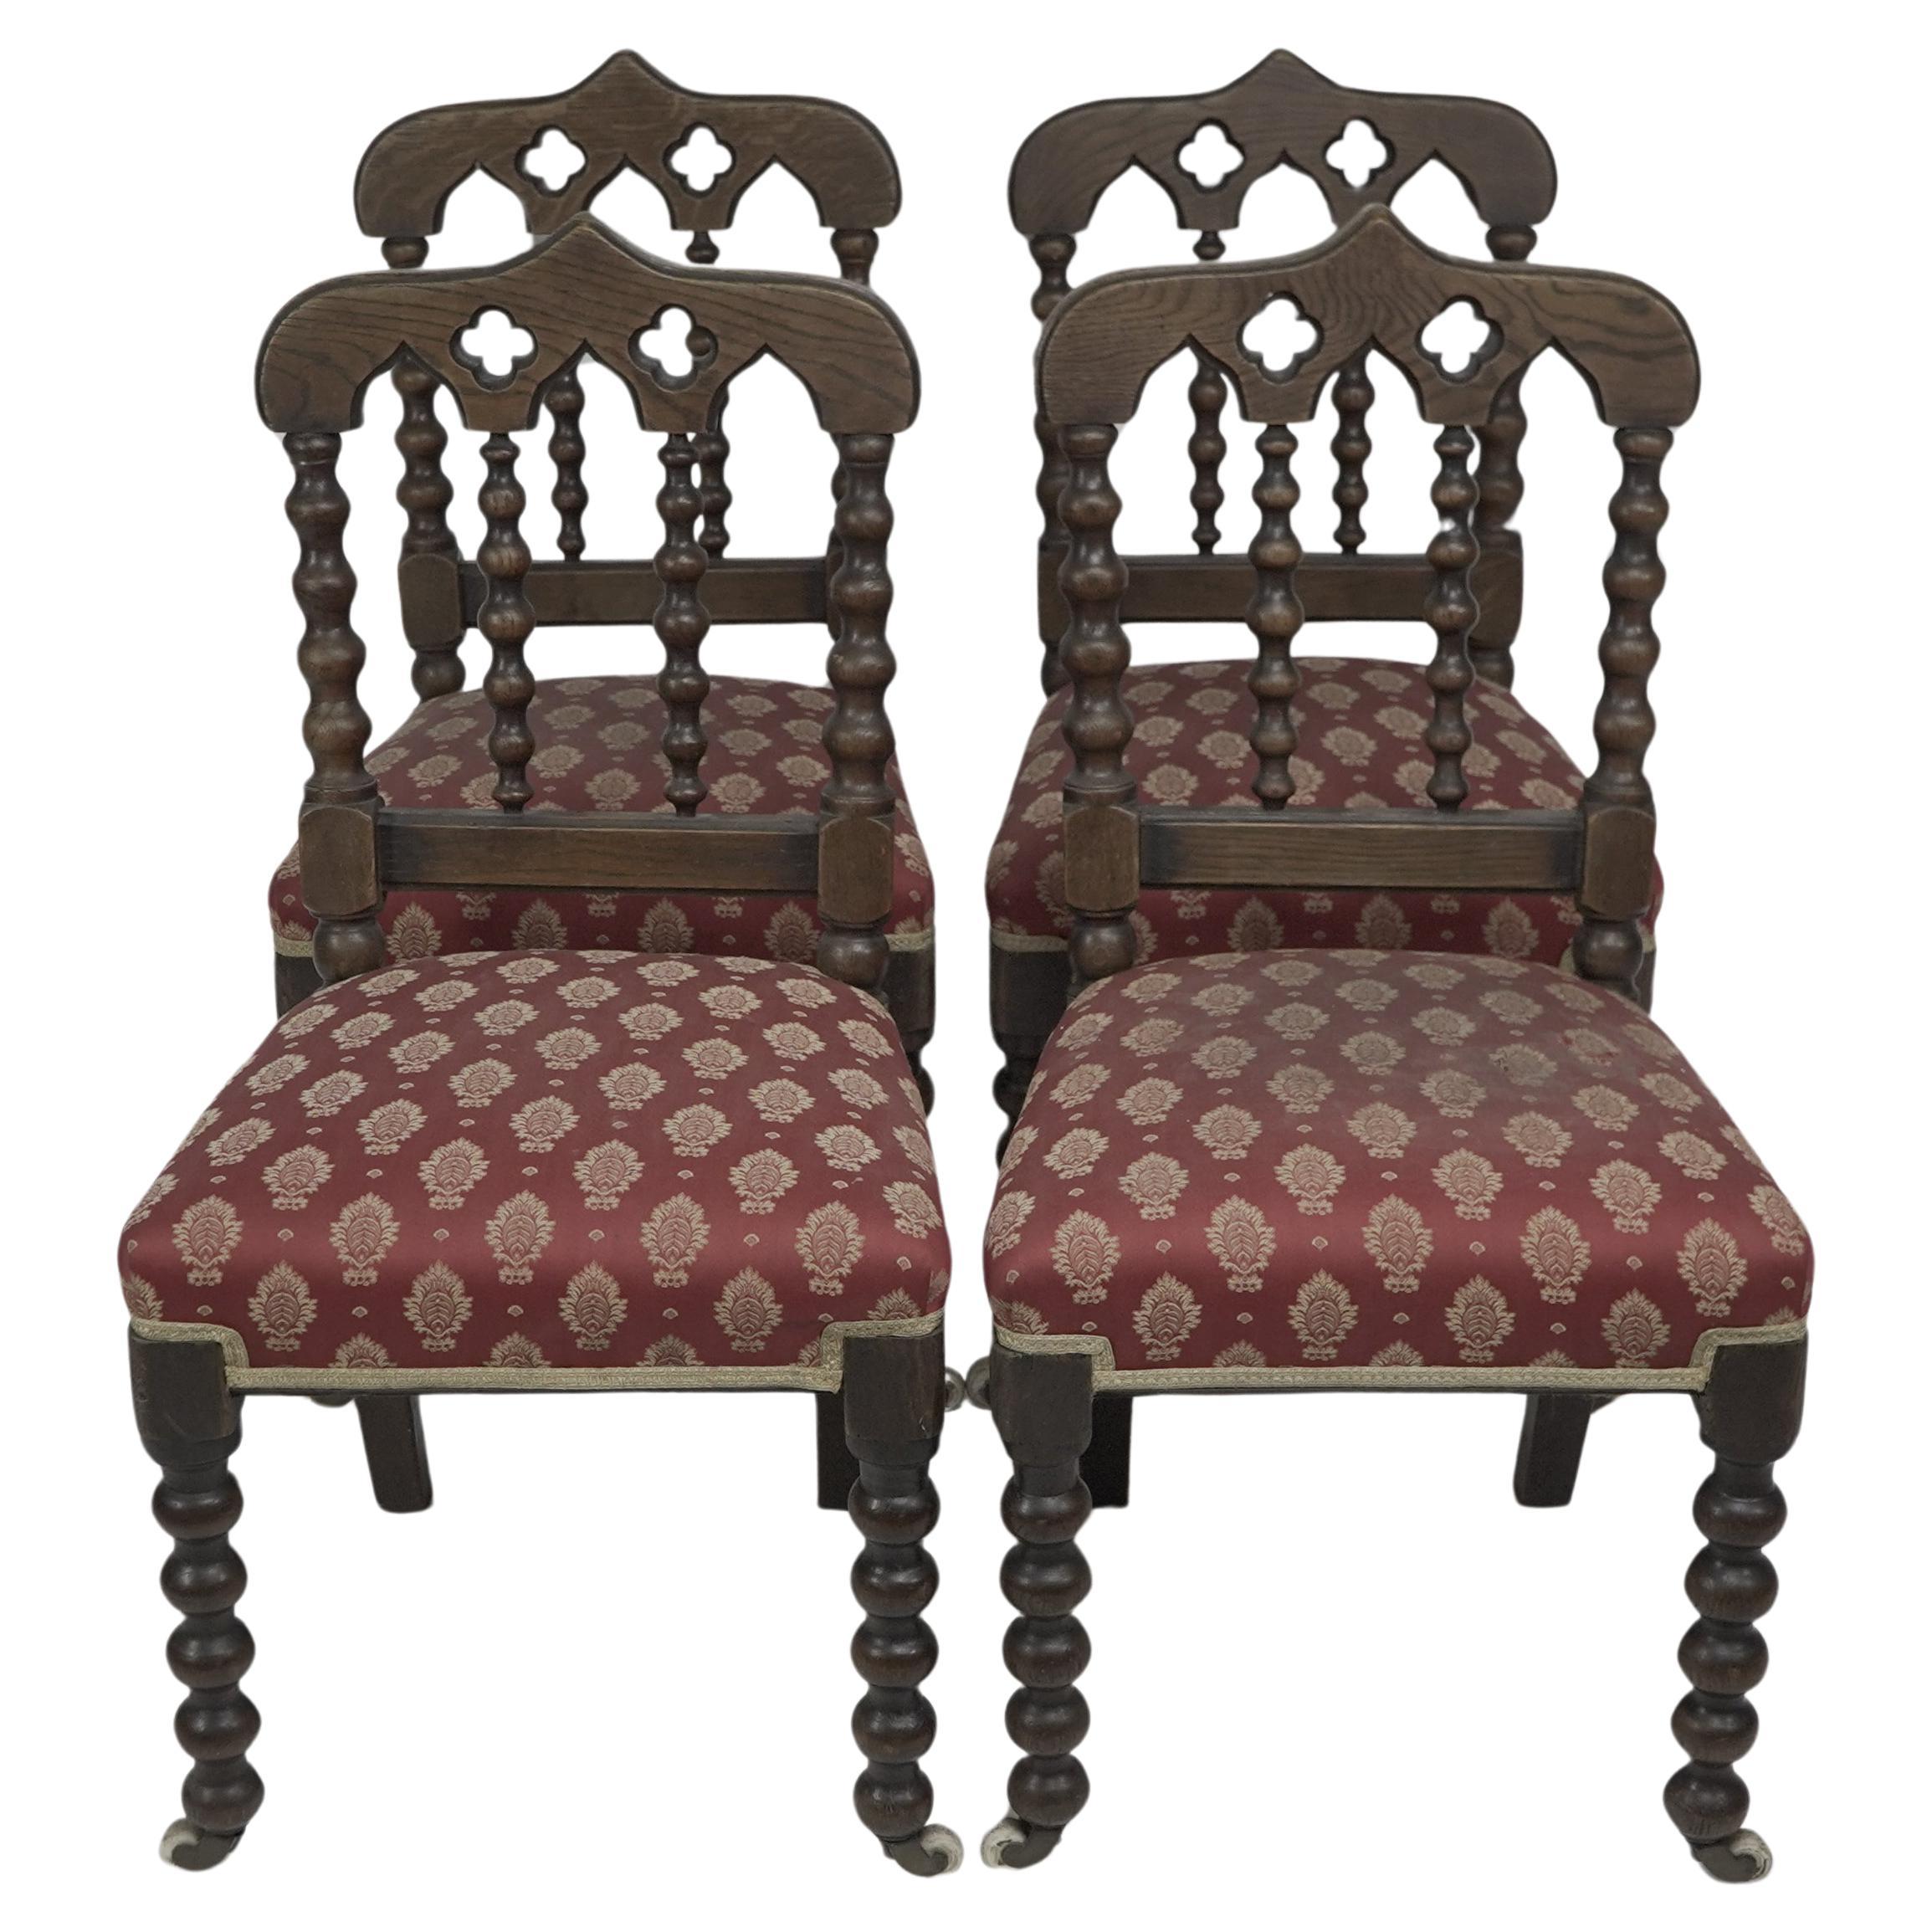 Un ensemble de bonne qualité de quatre chaises de salle à manger en chêne Revive gothique avec des tournures aux fuseaux.